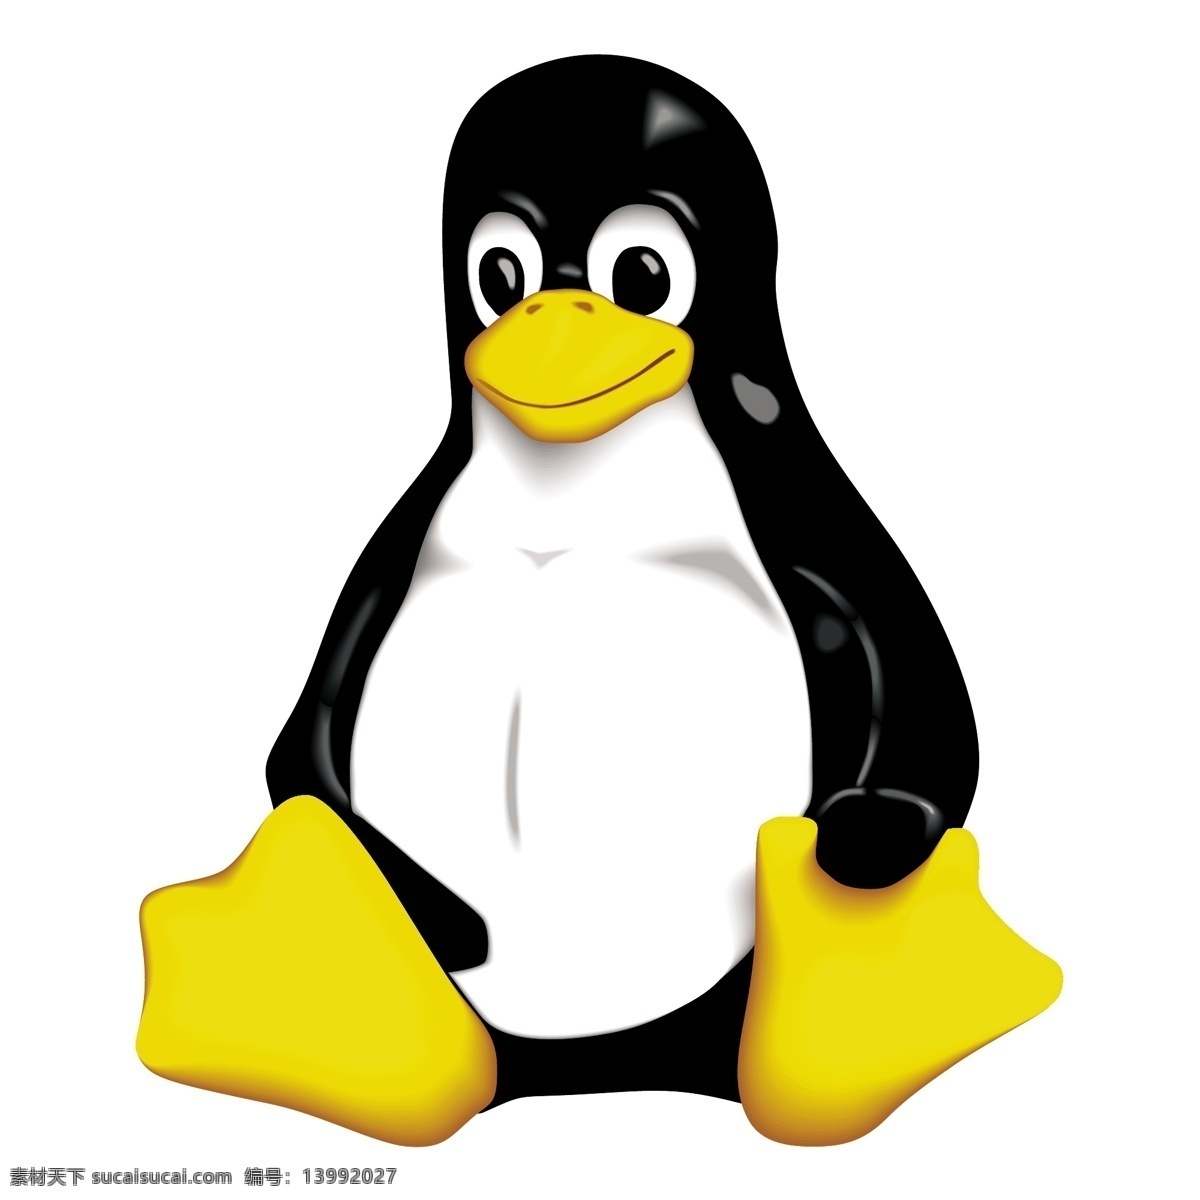 linux 晚礼服 免费 礼服 标志 标识 psd源文件 logo设计